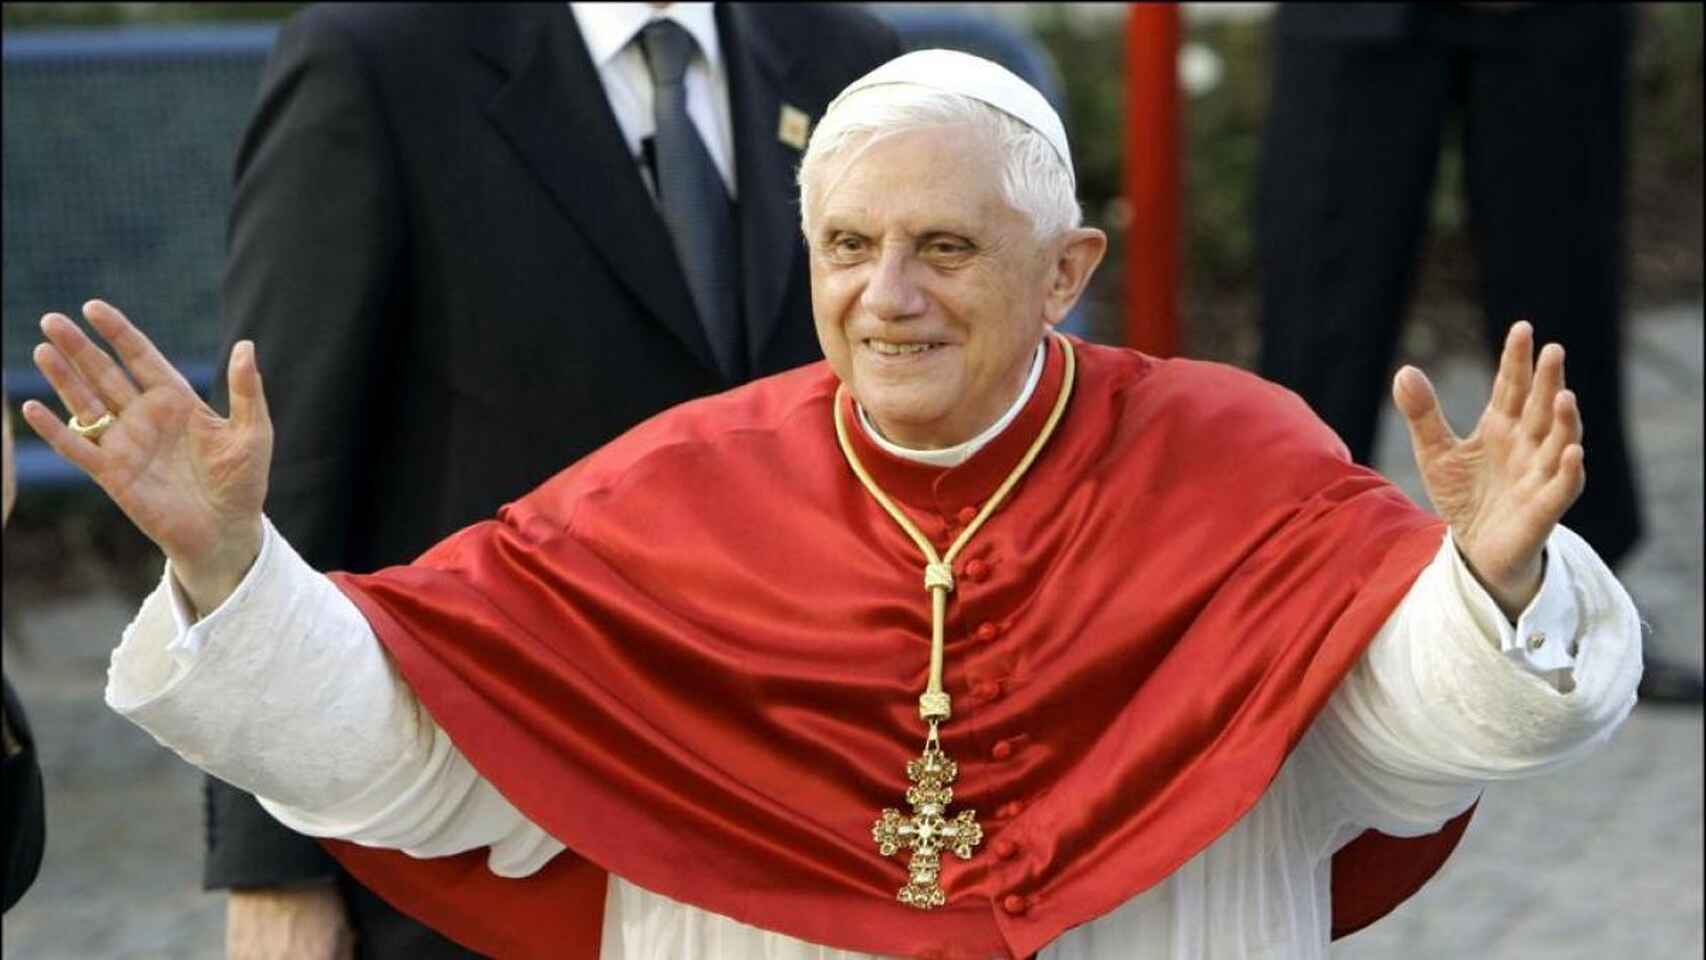 Benedicto XVI pide perdón por los abusos sexuales, pero niega que los encubriera